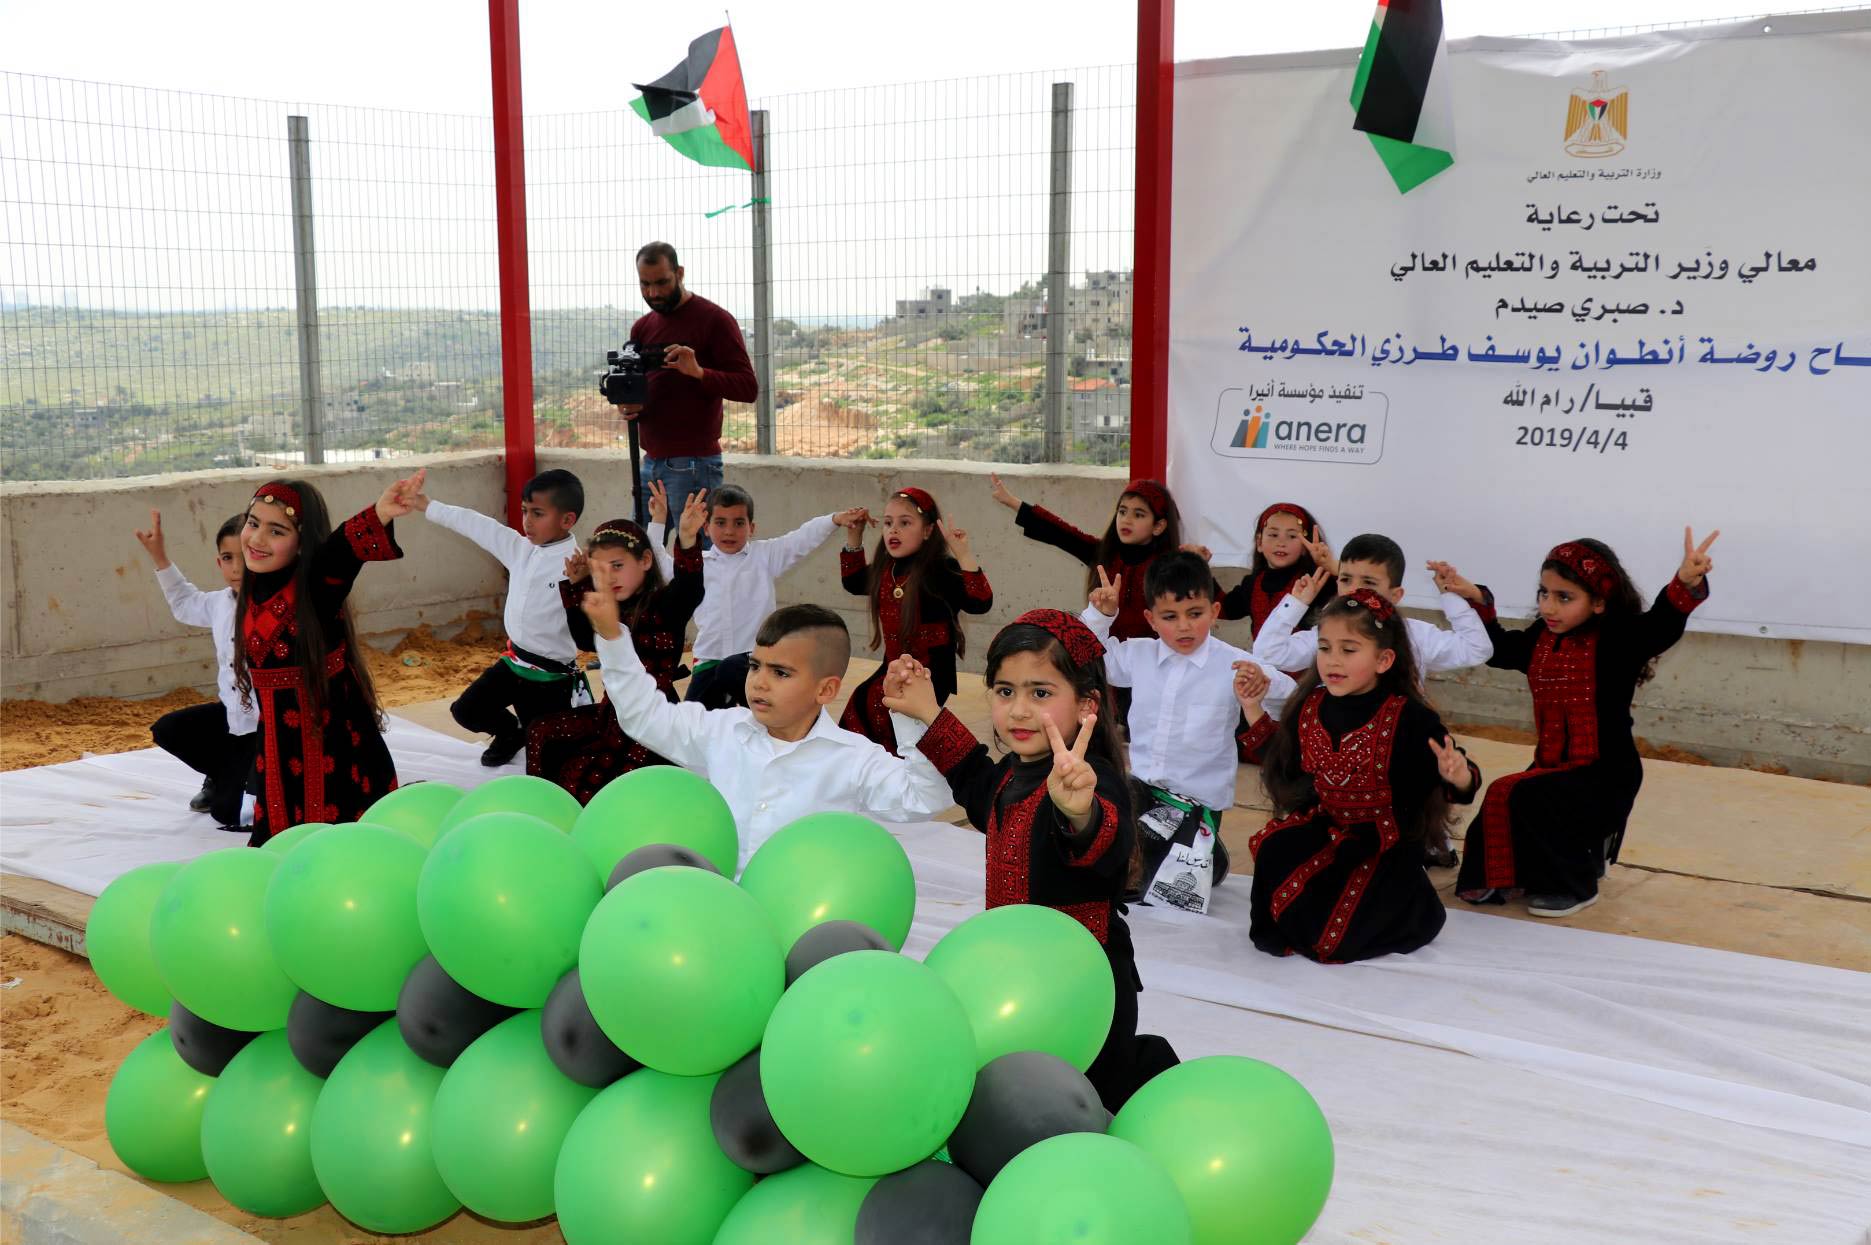 Children's dance performance at Qibya kindergarten inauguration